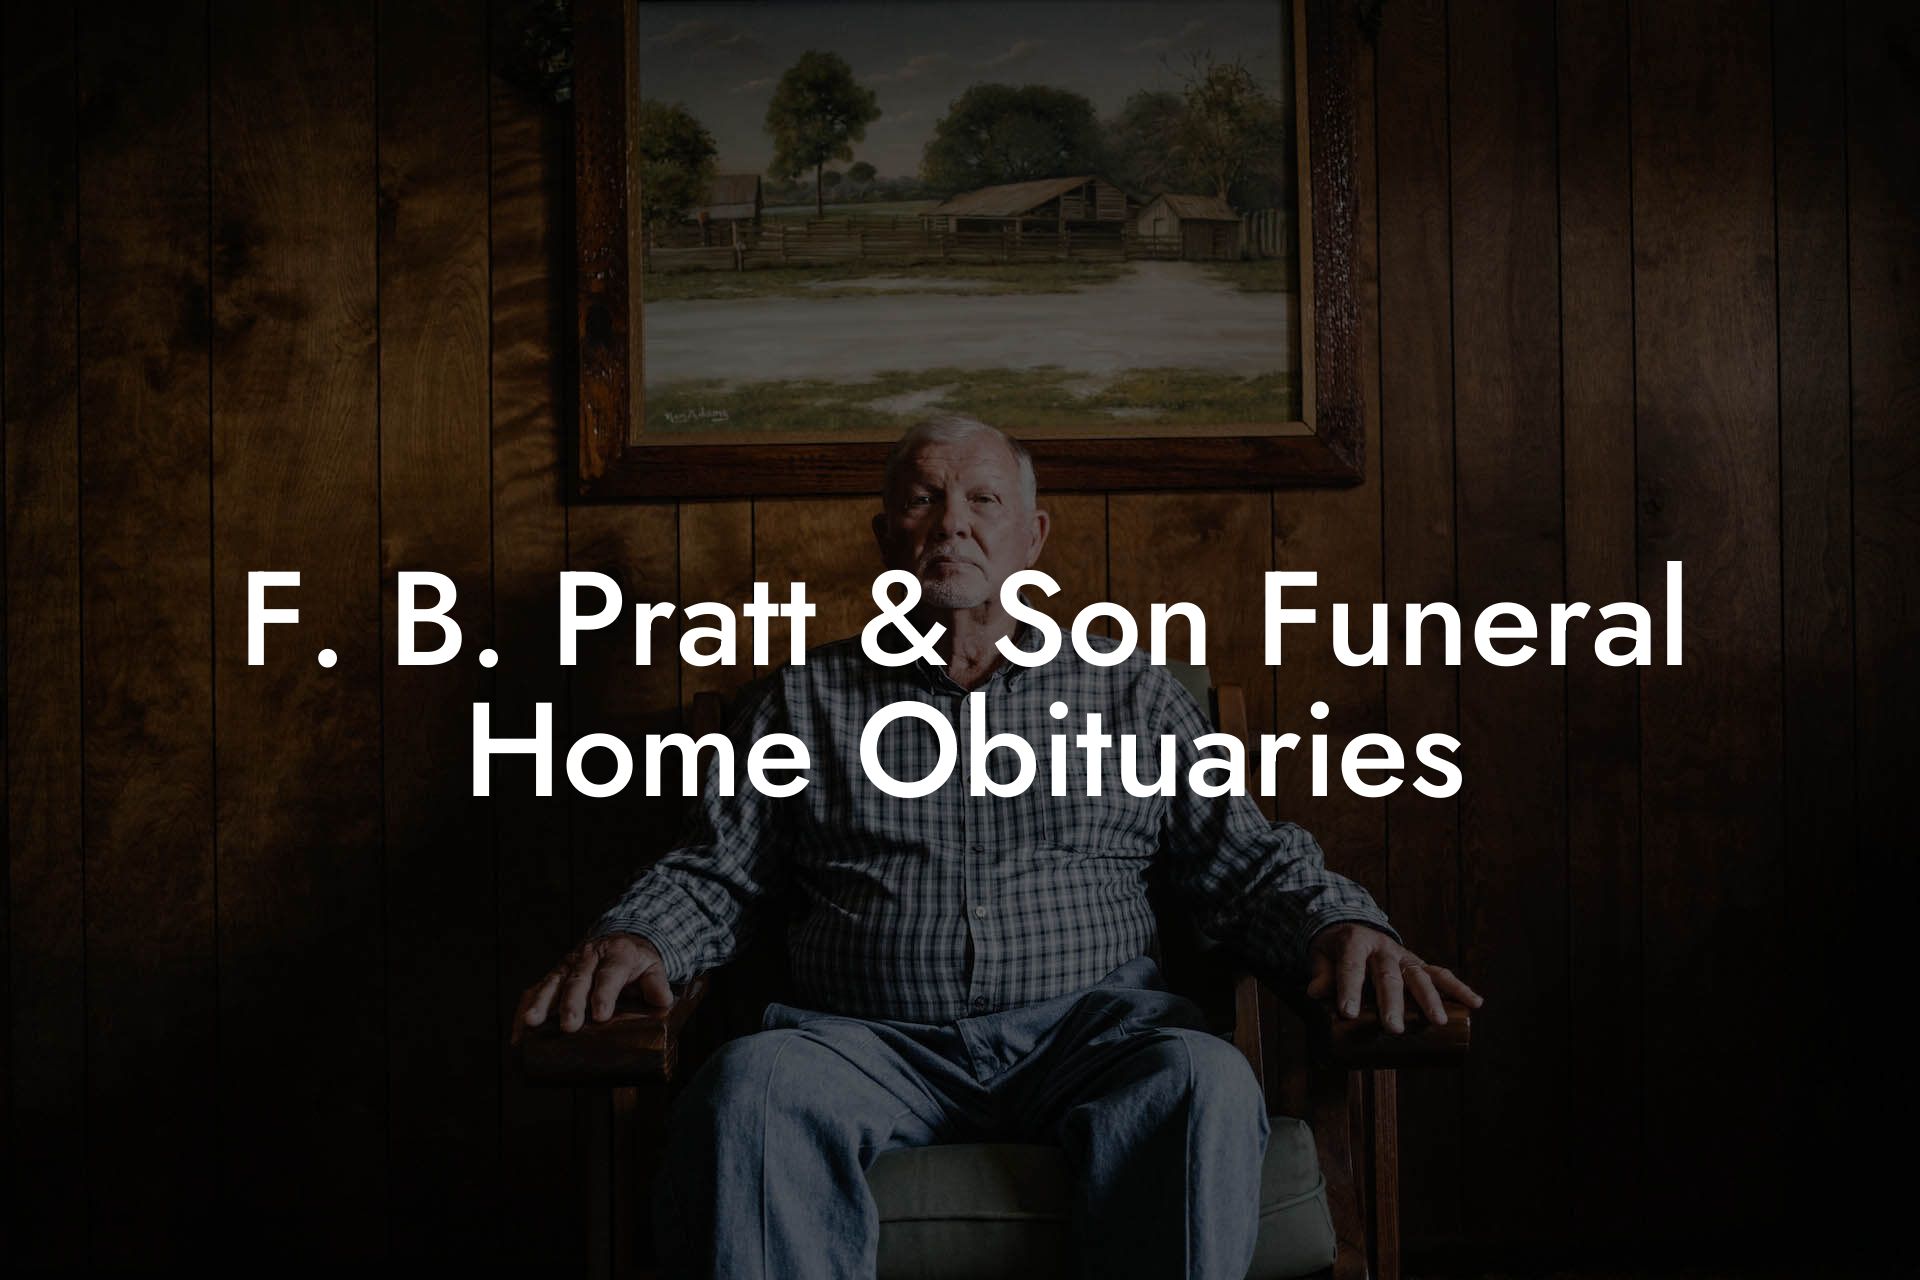 F. B. Pratt & Son Funeral Home Obituaries